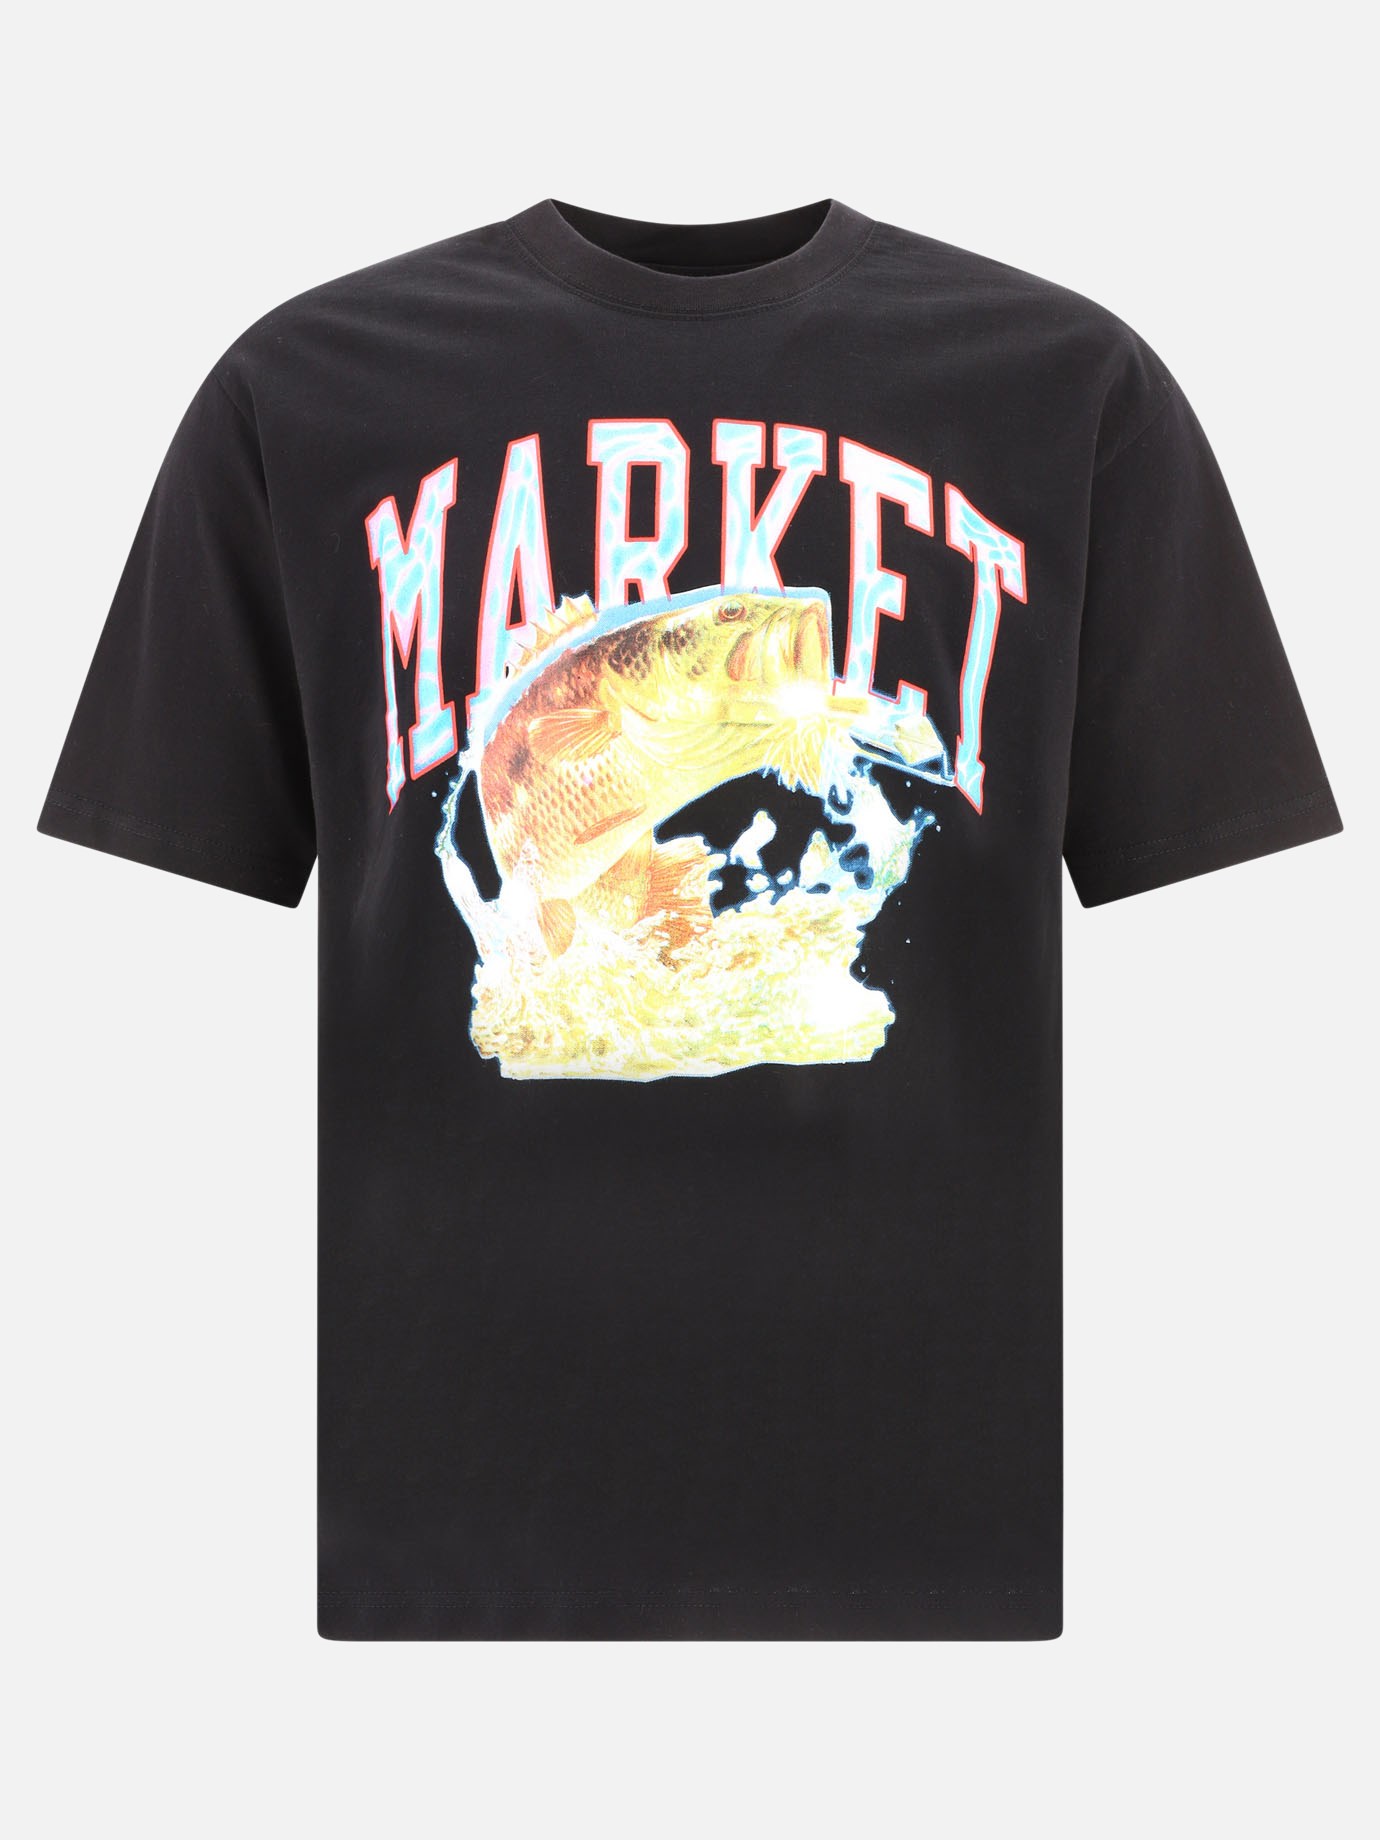  Bass Arch  t-shirt by Market